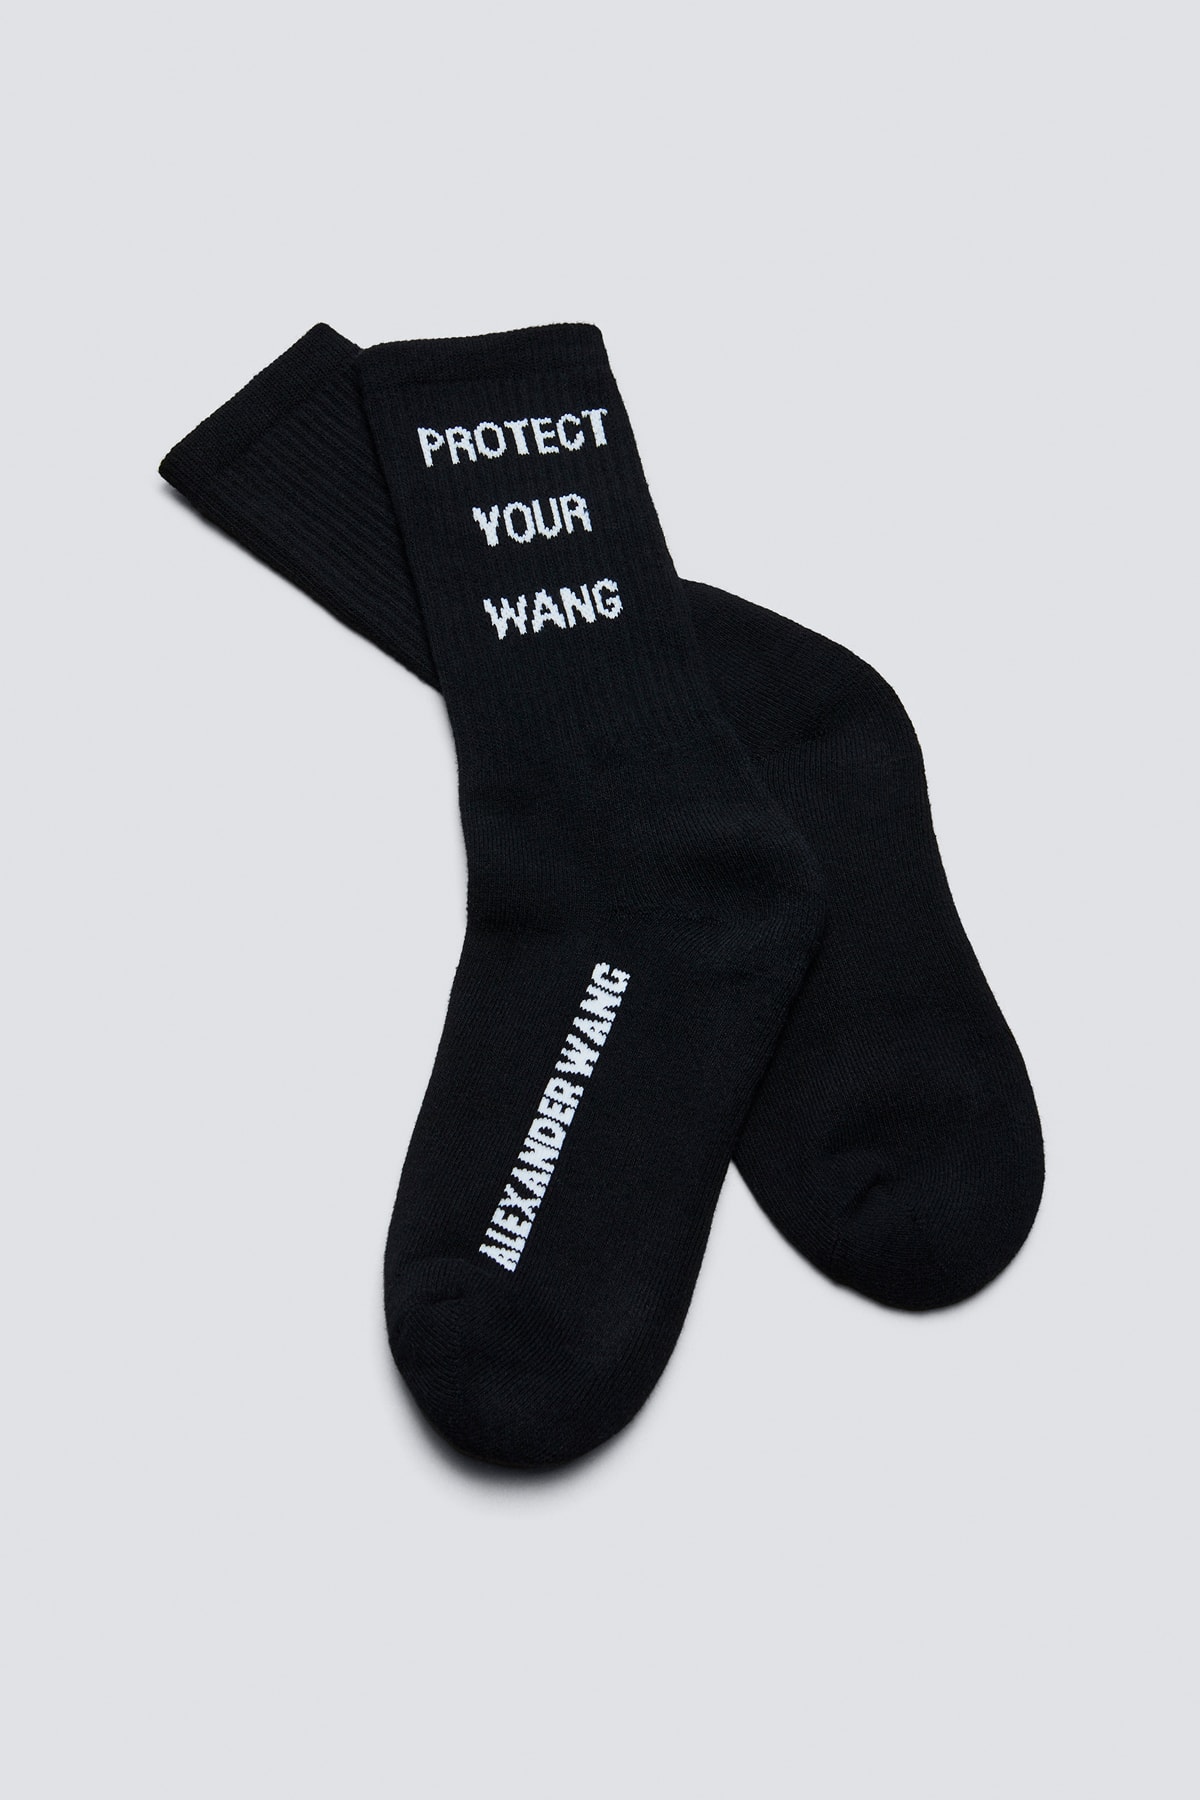 Alexander Wang x Trojan Condoms Protect Your Wang Socks